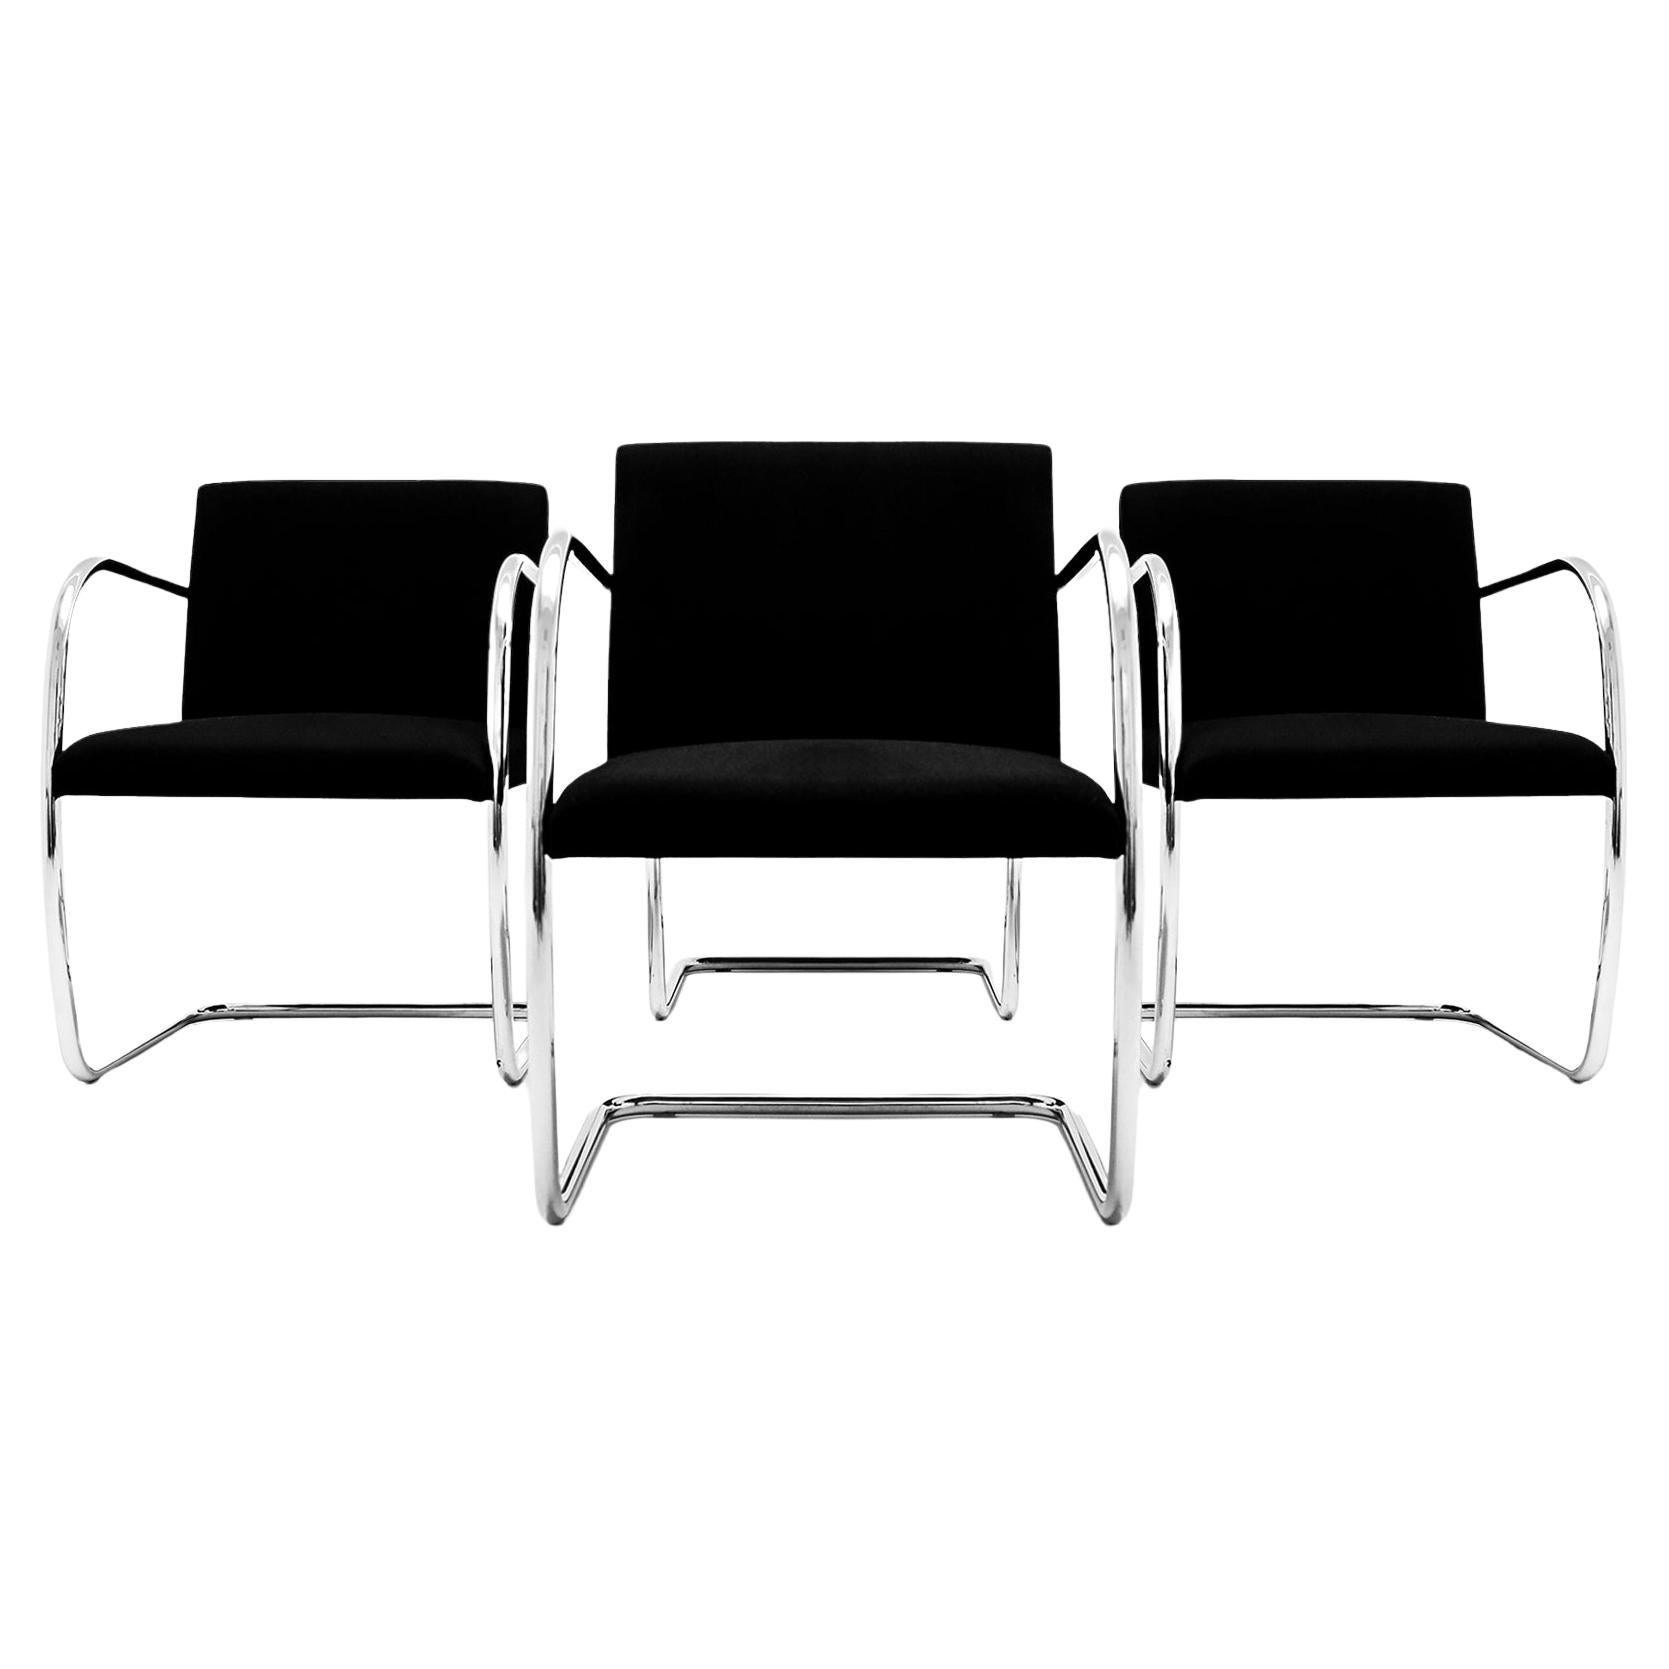 4 chaises de salle à manger tubulaires chromées vintage Ludwig Mies van der Rohe Knoll, MR50 BRNO